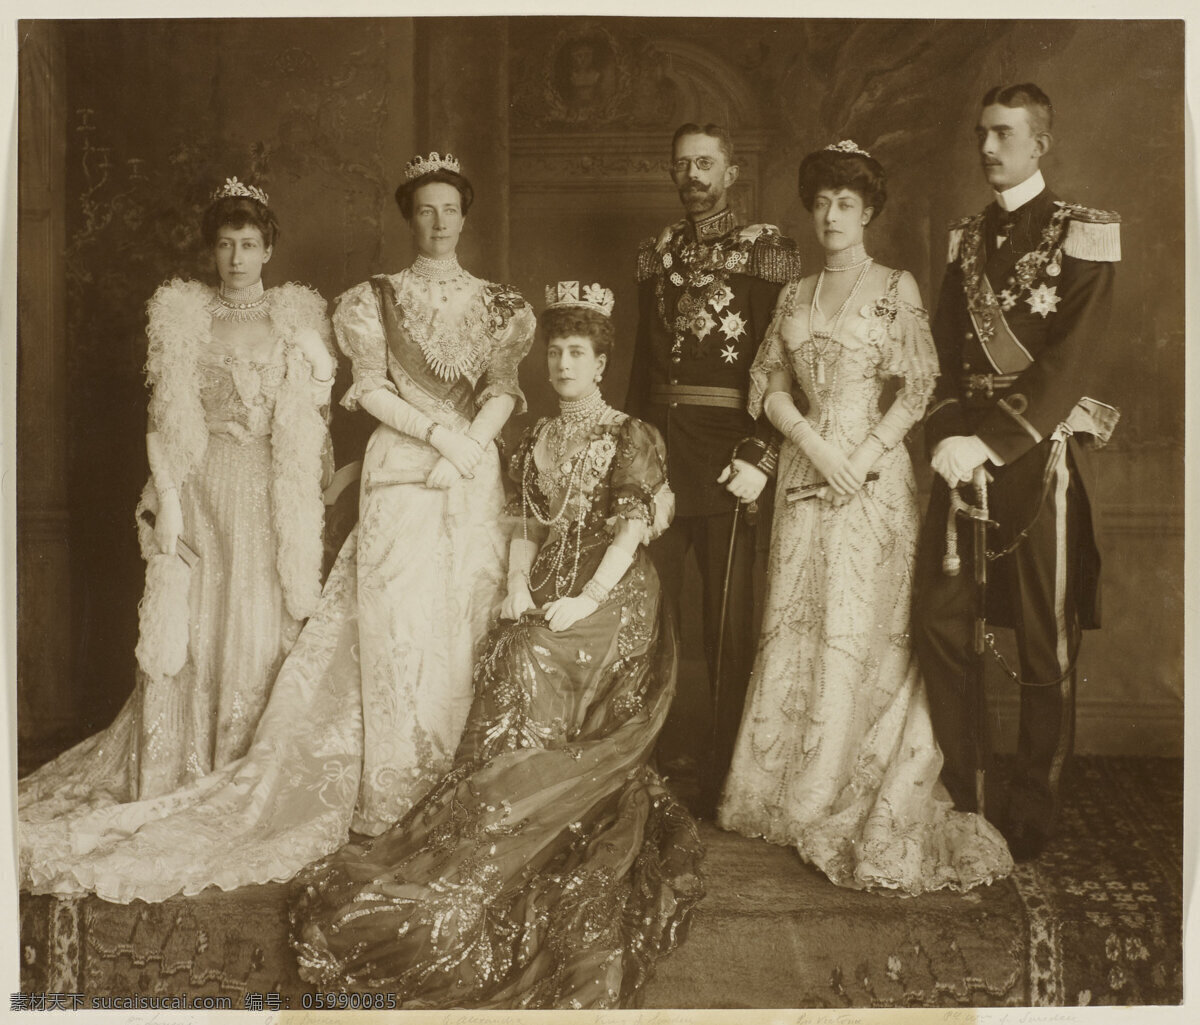 英国王室照片 路易丝长公主 亚历山德拉 王后 维多利亚公主 合影 两位大公 大公夫人 老照片 文化艺术 绘画书法